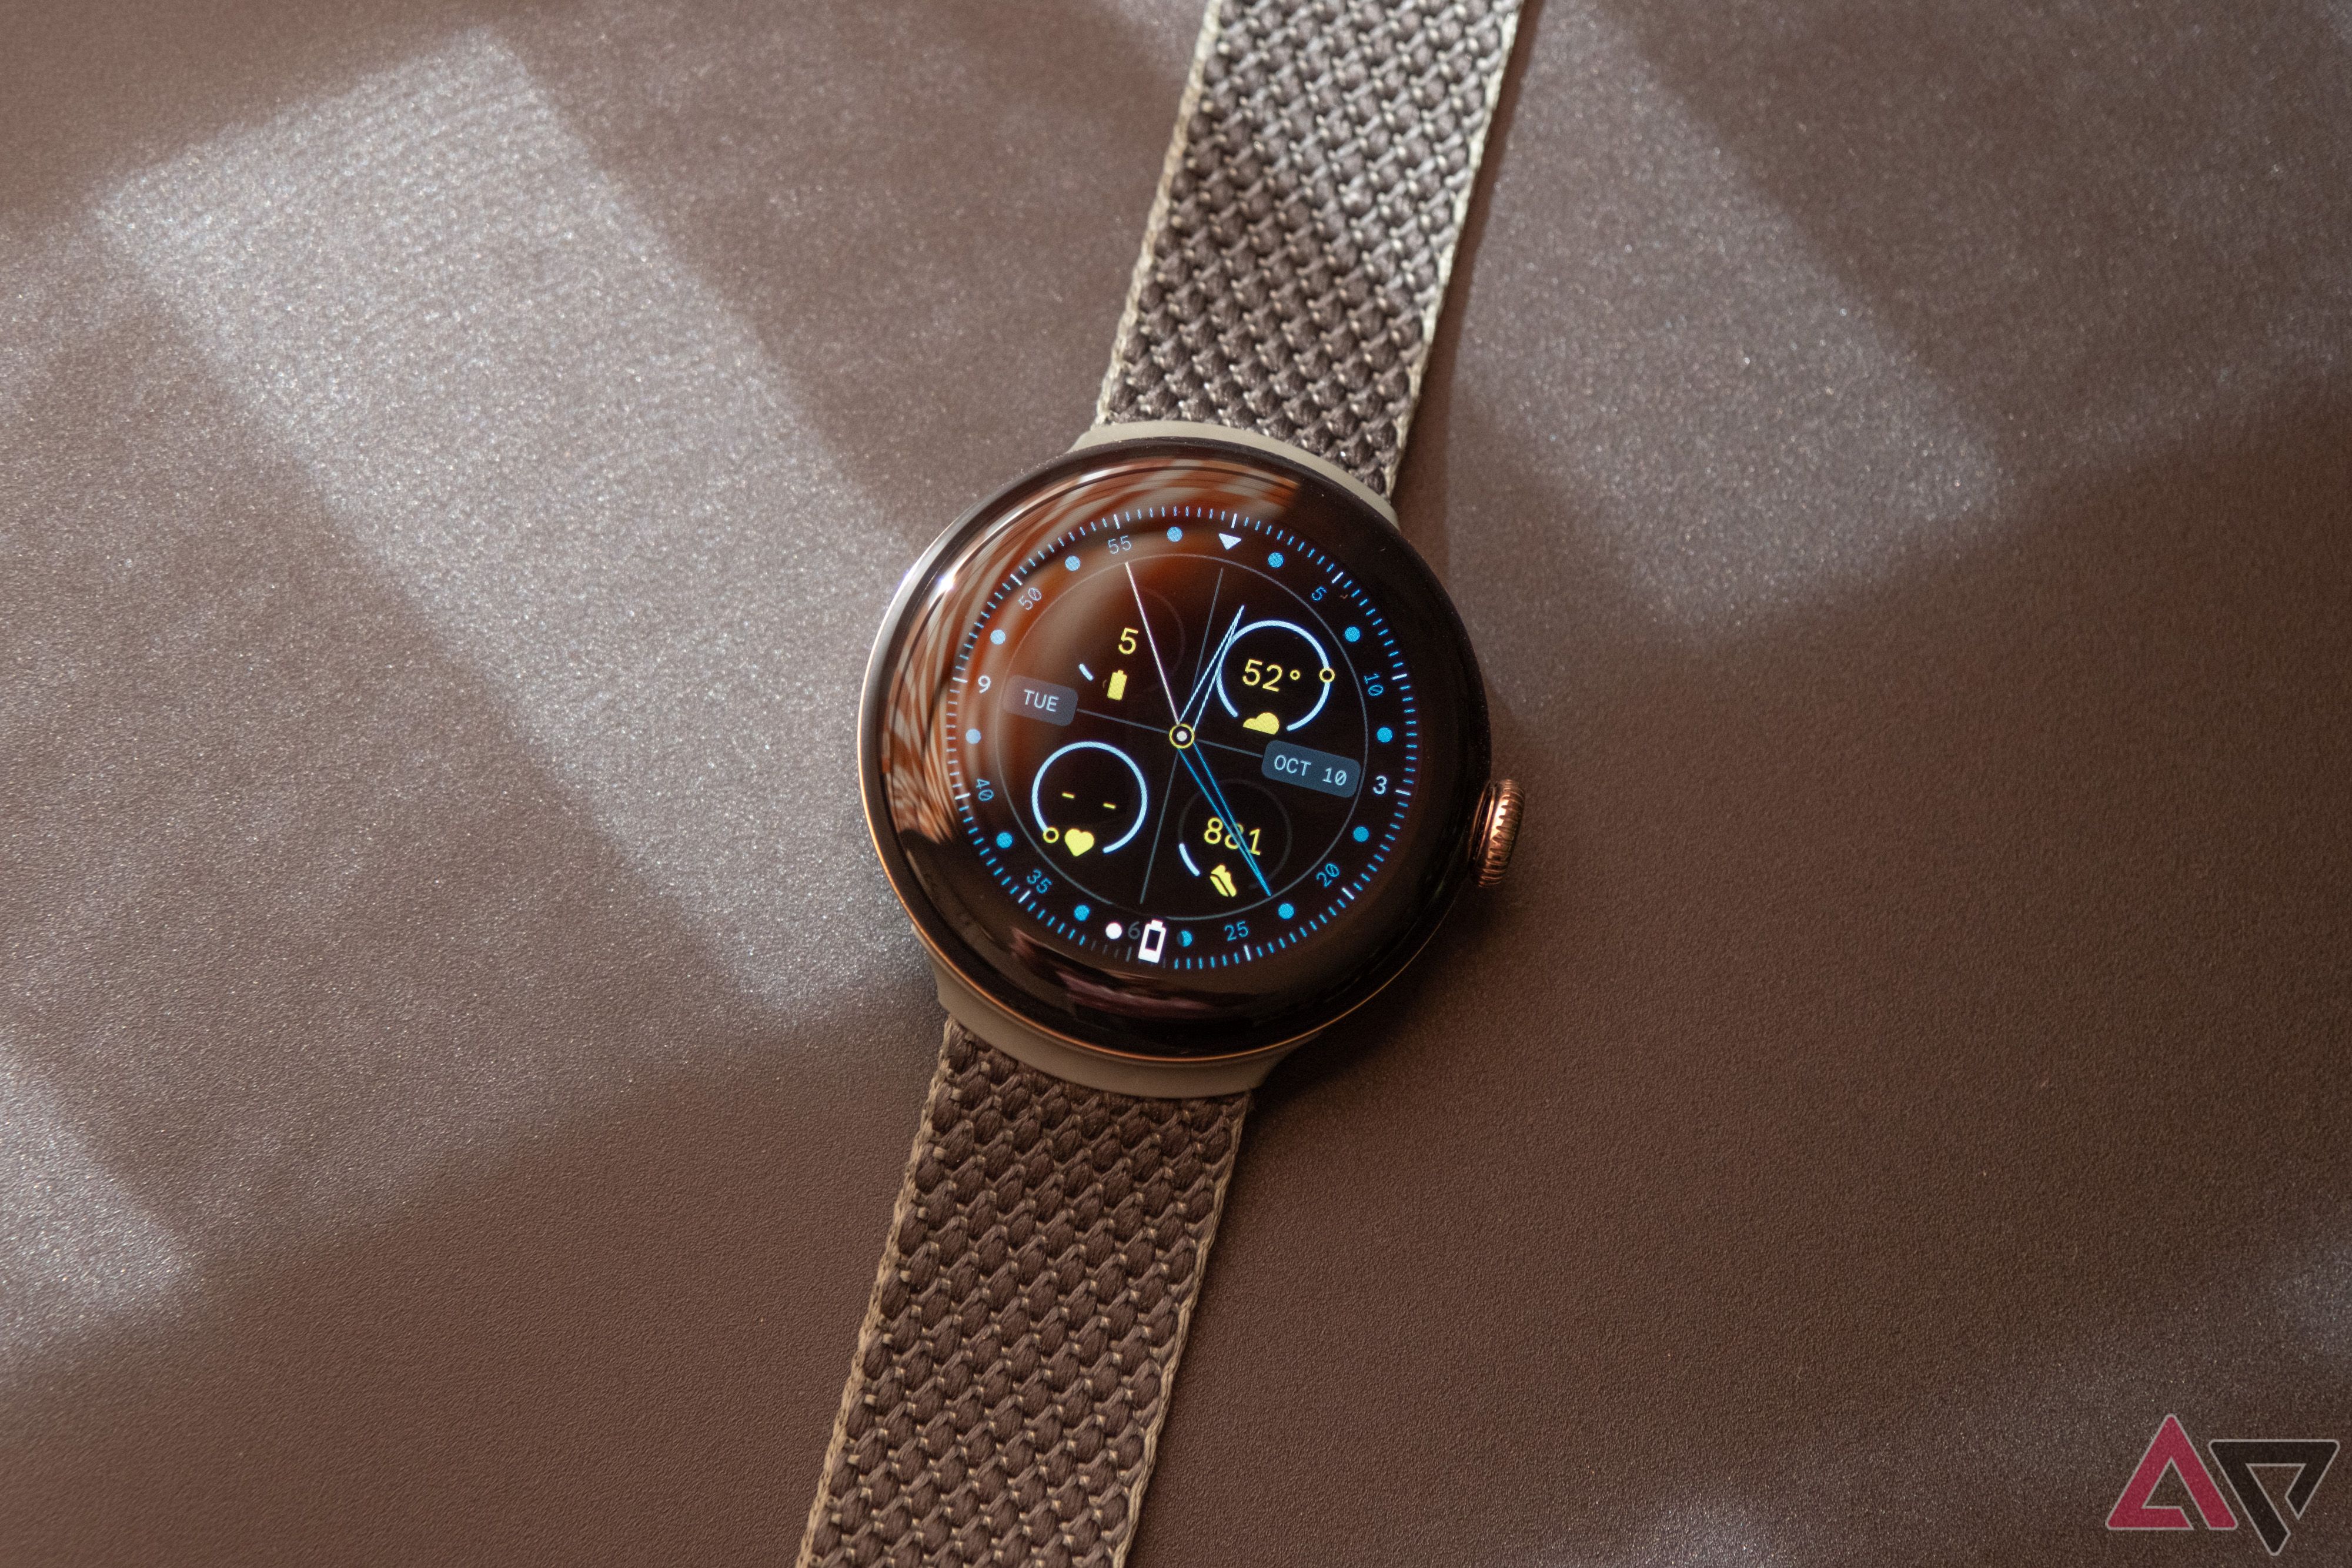 Um Google Pixel Watch repousa sobre uma superfície texturizada bege